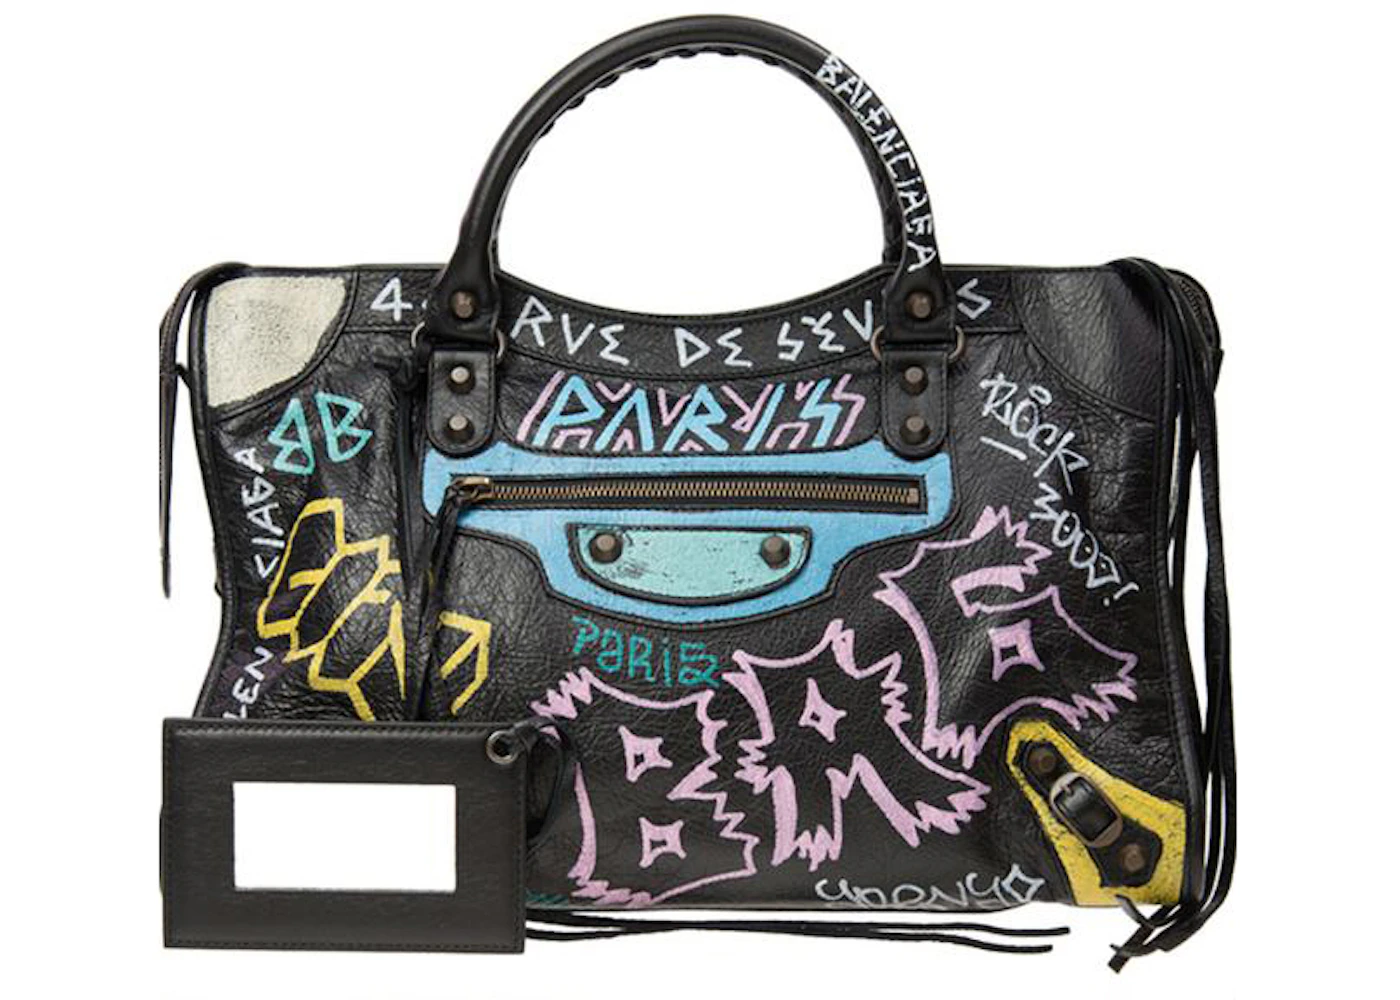 vervangen Blaze Lil Balenciaga Agneau Graffiti Shoulder Bag Large Black in Leather - US